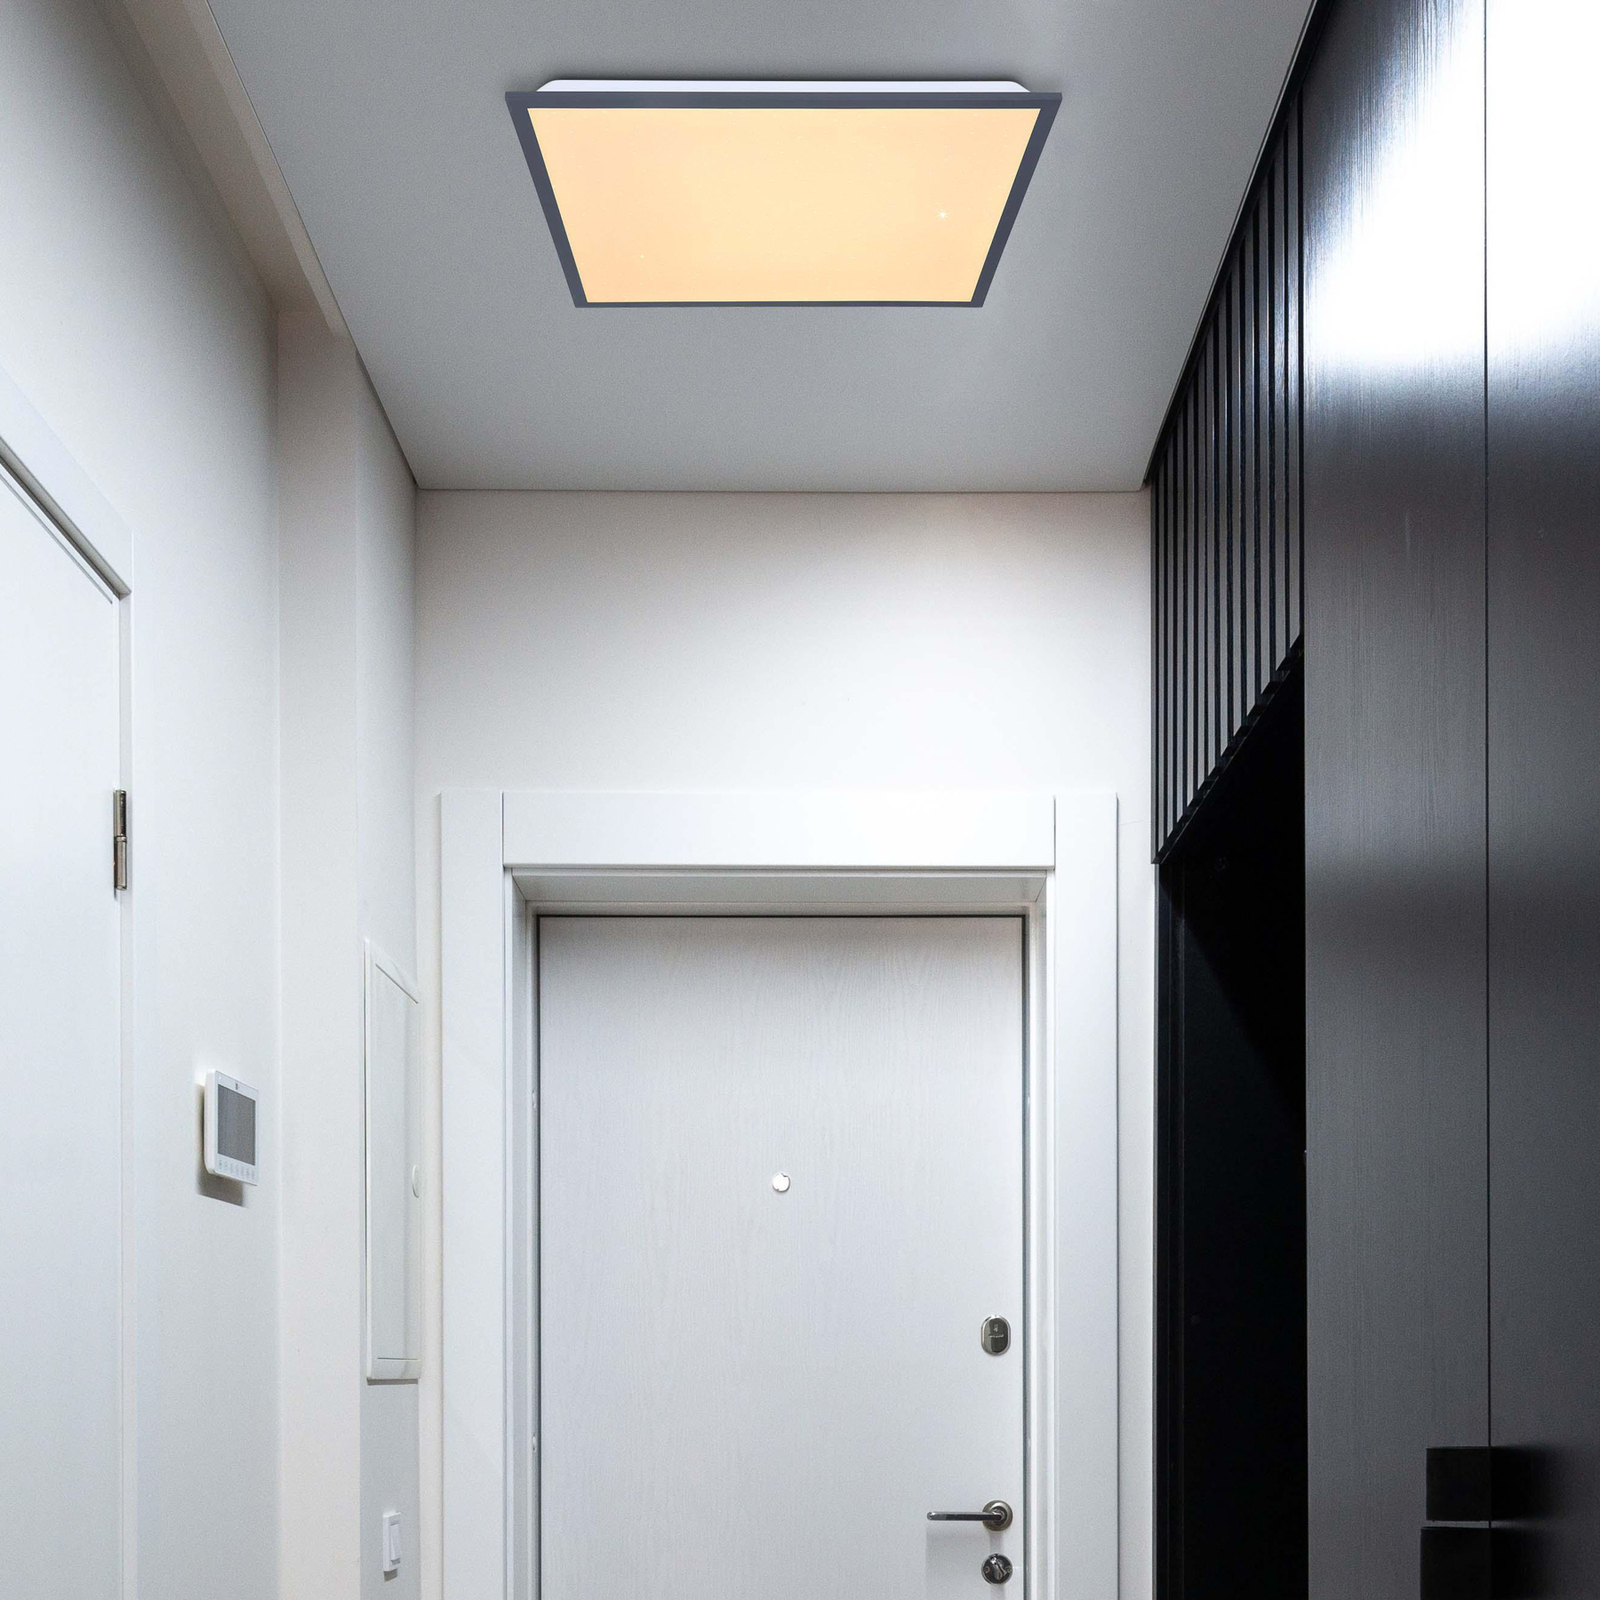 Doro LED stropna svetilka, dolžina 45 cm, bela/grafit, aluminij